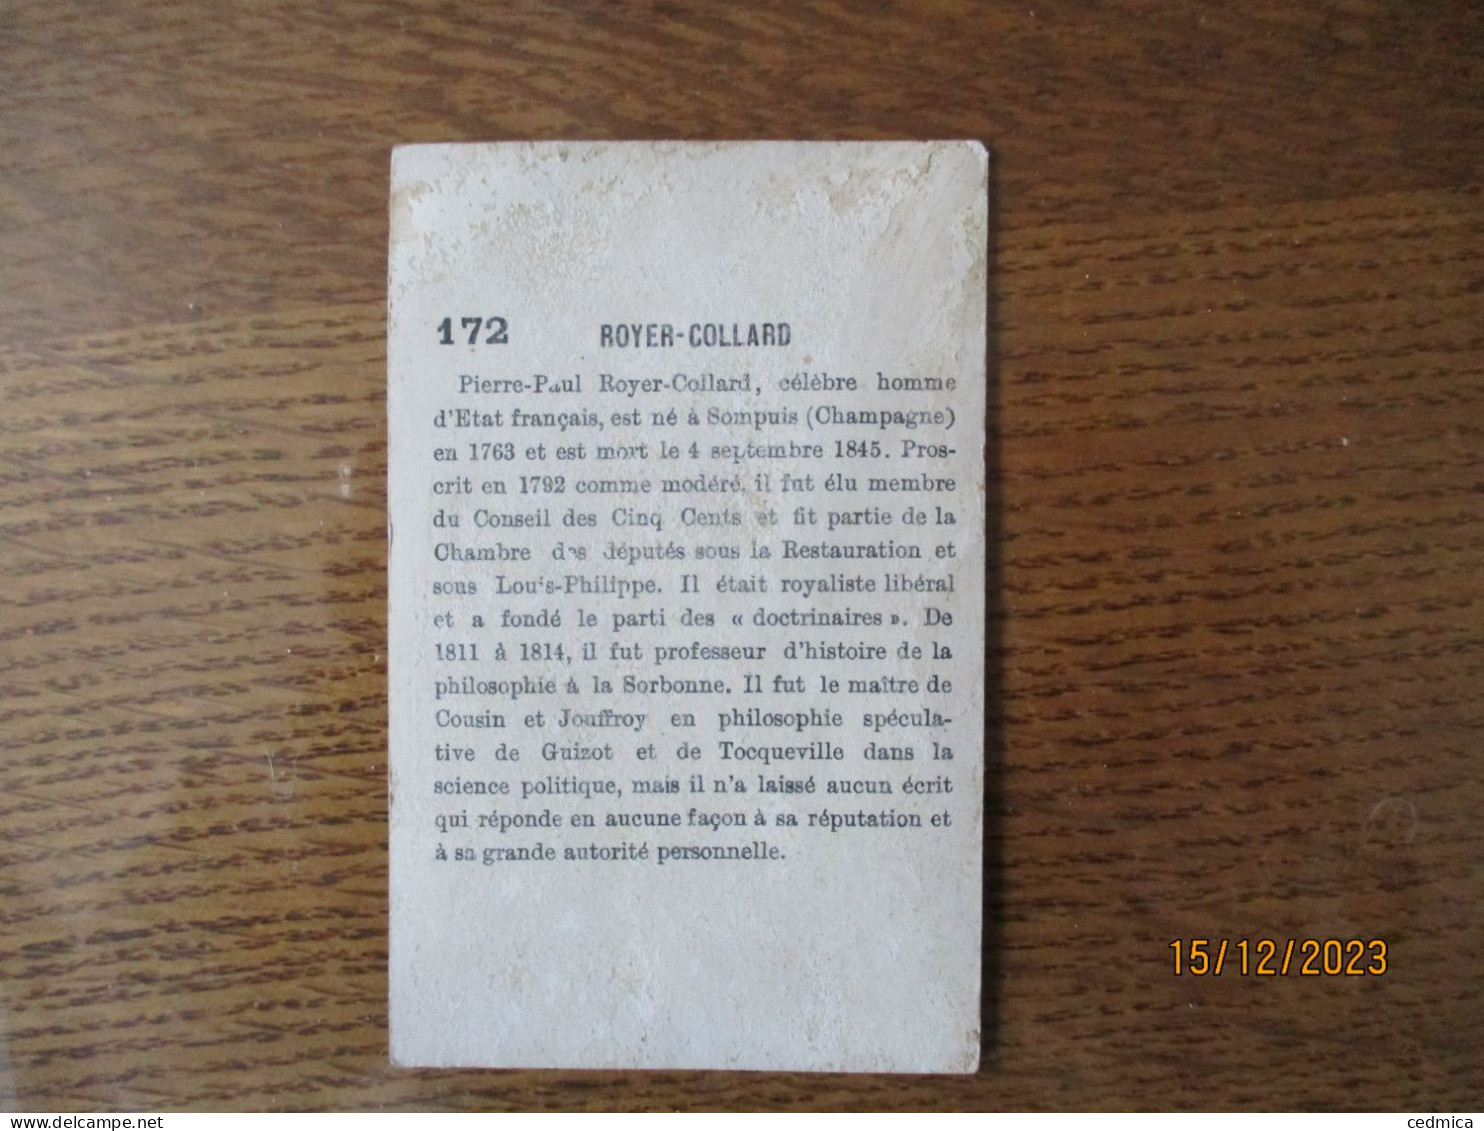 ROYER-COLLARD CELEBRE HOMME D'ETAT FRANCAIS NE A SOMPUIS EN 1763 MORT LE 4 SEPTEMBRE 1845 - Ibled